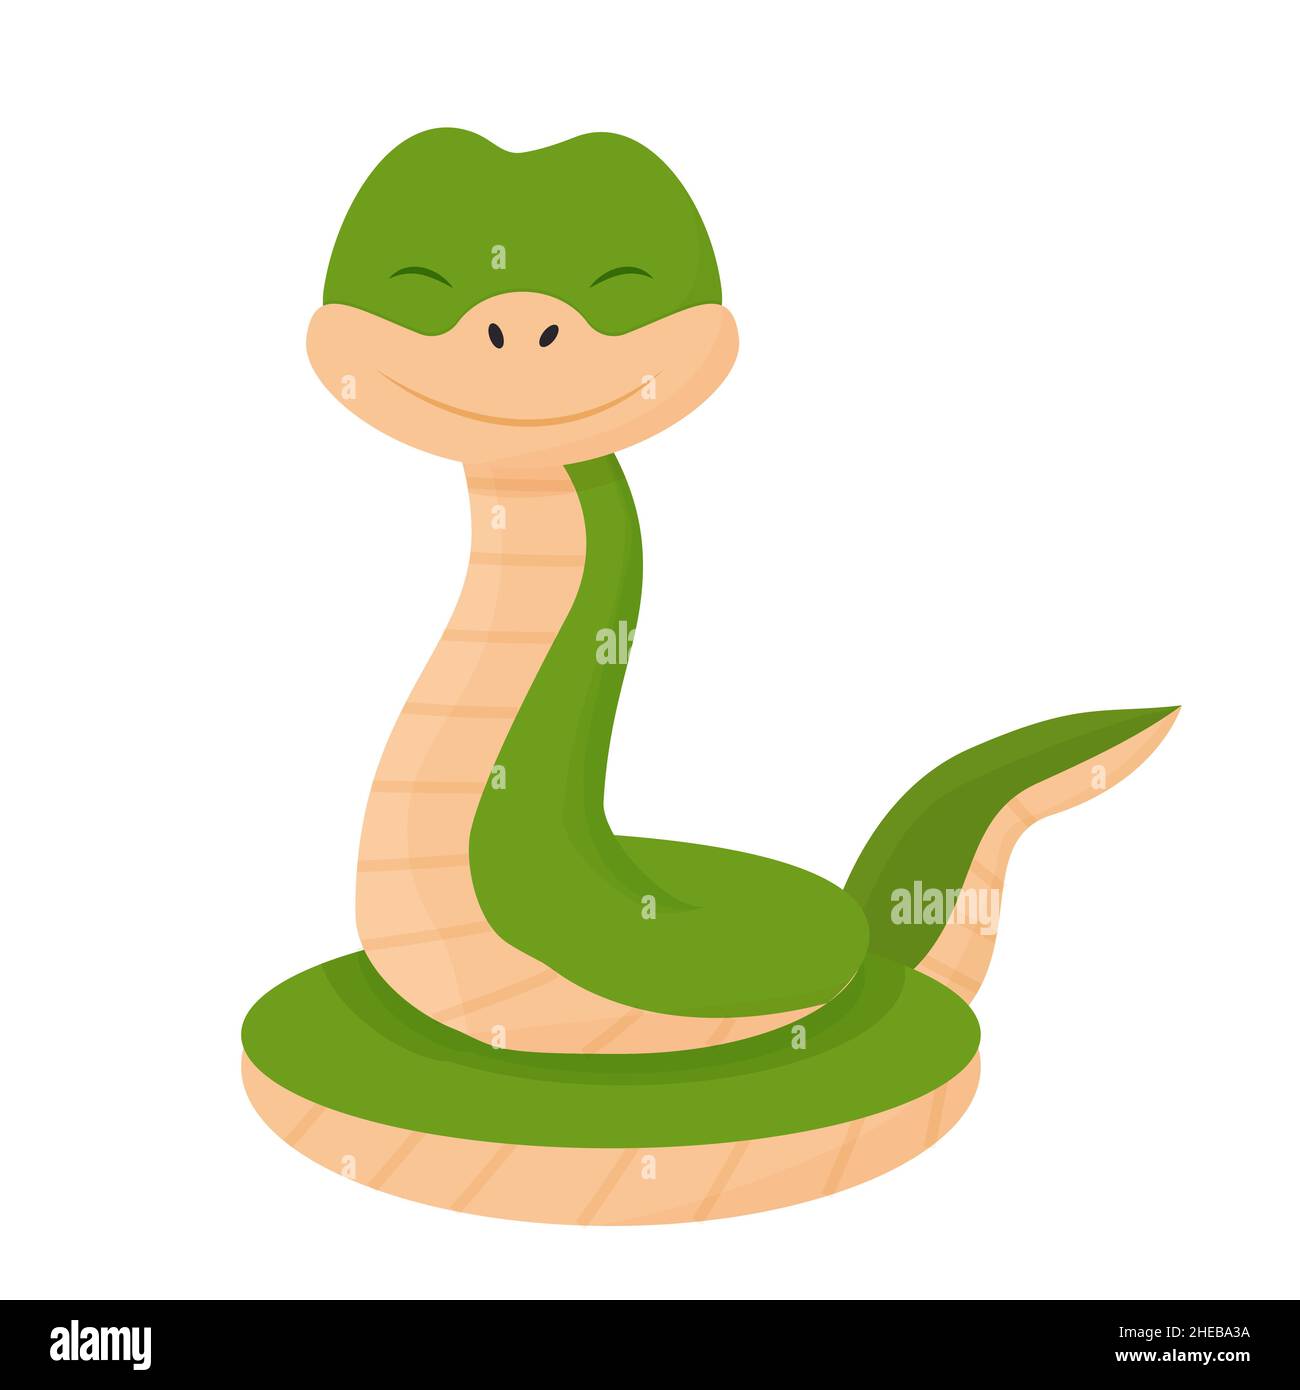 Serpent de caractère mignon et gai, souriant dans un style de dessin animé.Animal puéril, clip art reptile isolé sur fond blanc.Illustration vectorielle Illustration de Vecteur